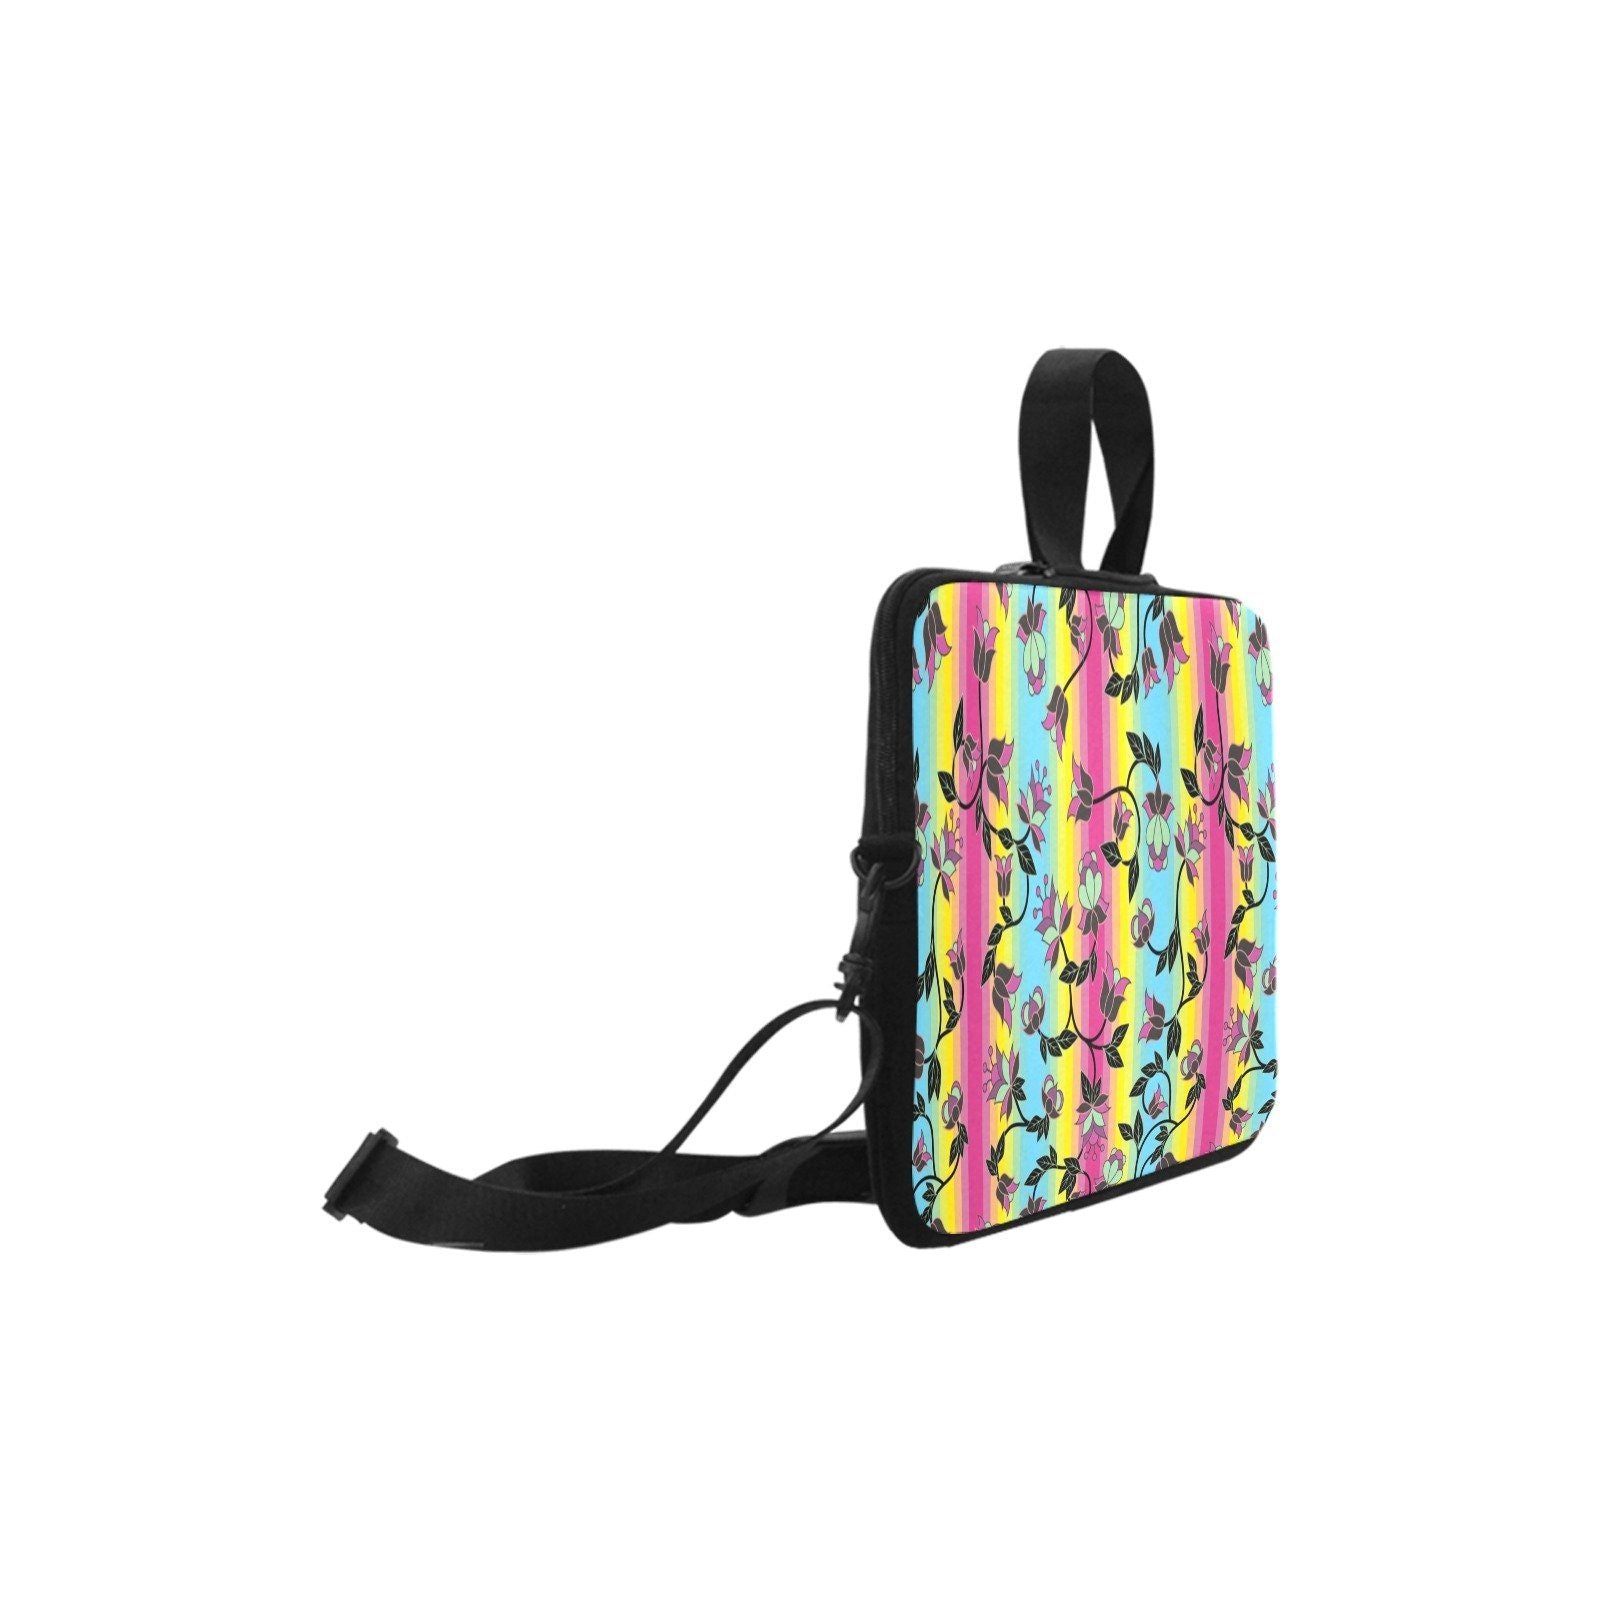 Powwow Carnival Laptop Handbags 15" Laptop Handbags 15" e-joyer 